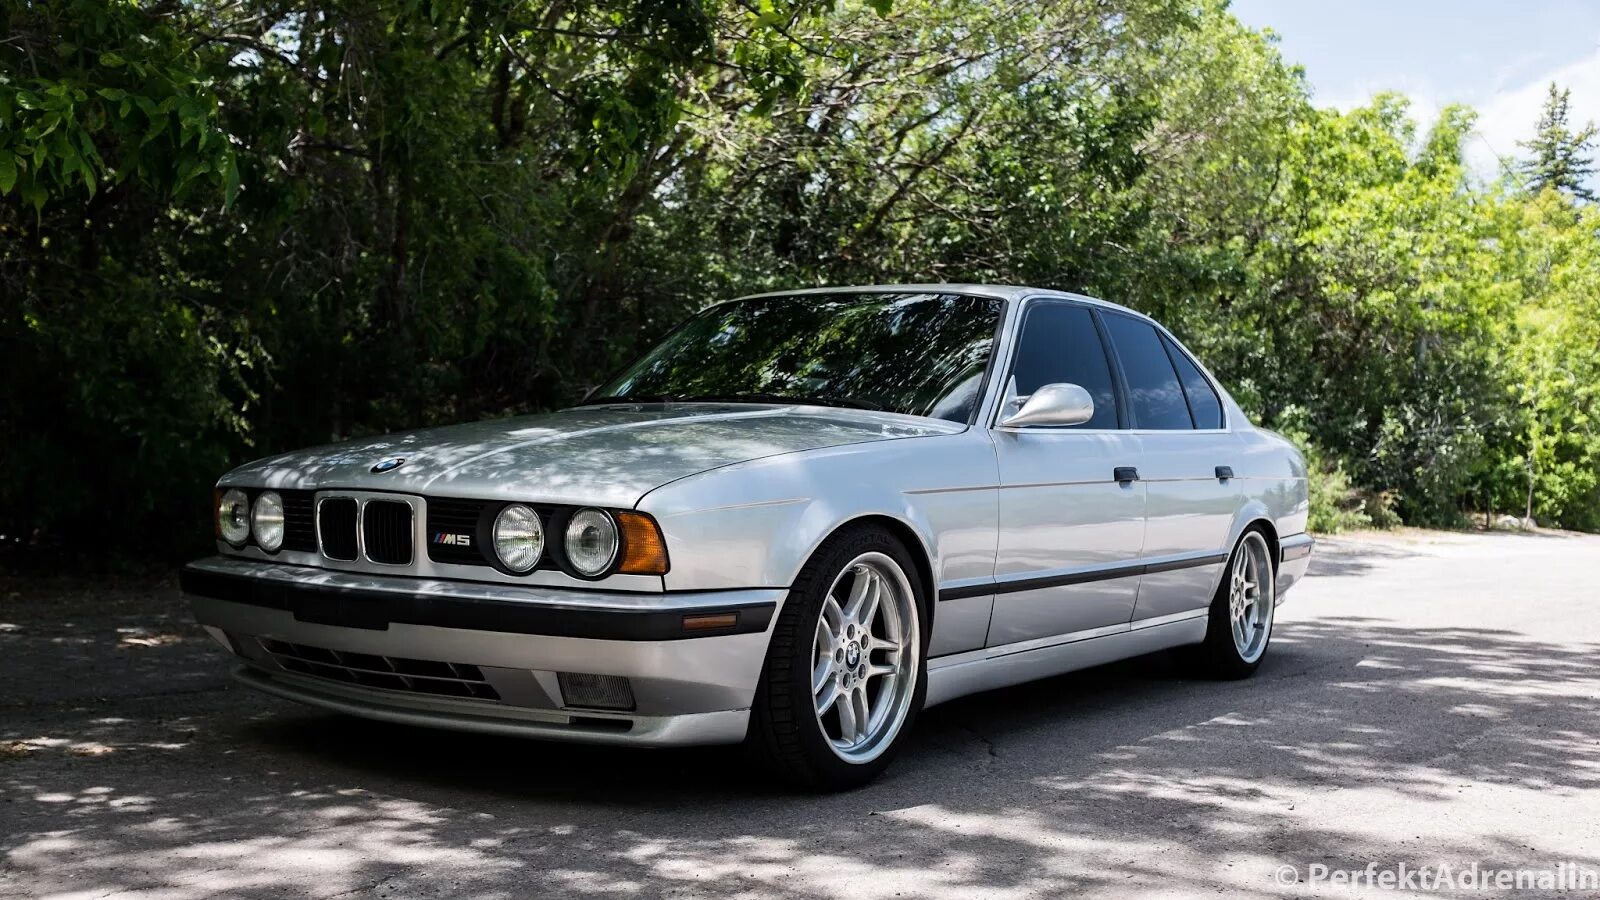 Е34 объем. BMW E 34 серебро. BMW e34 Silver Metallic. BMW e34 m5 Silver. BMW e34 1997.